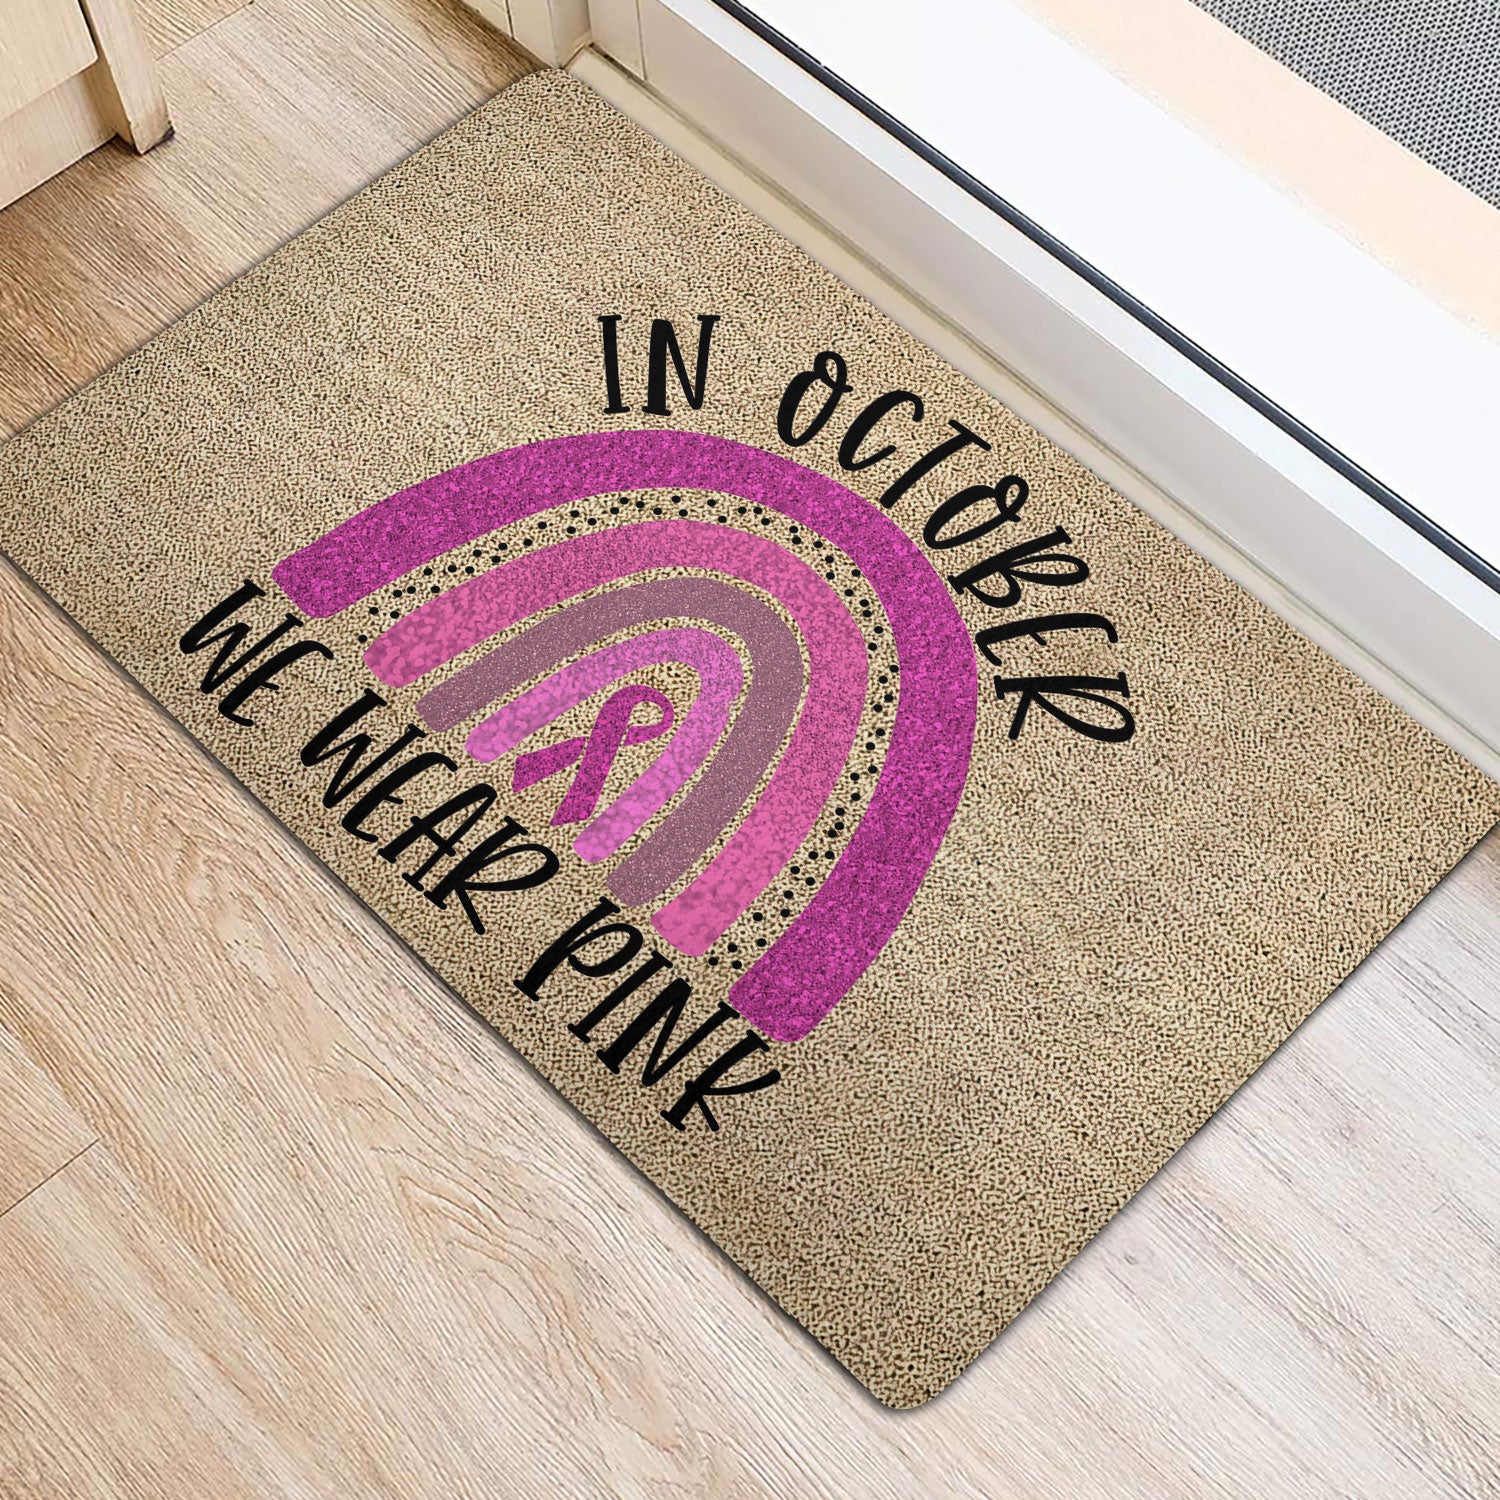 Ohaprints-Doormat-Outdoor-Indoor-Breast-Cancer-Awareness-Rainbow-In-October-We-Wear-Pink-Rubber-Door-Mat-1907-